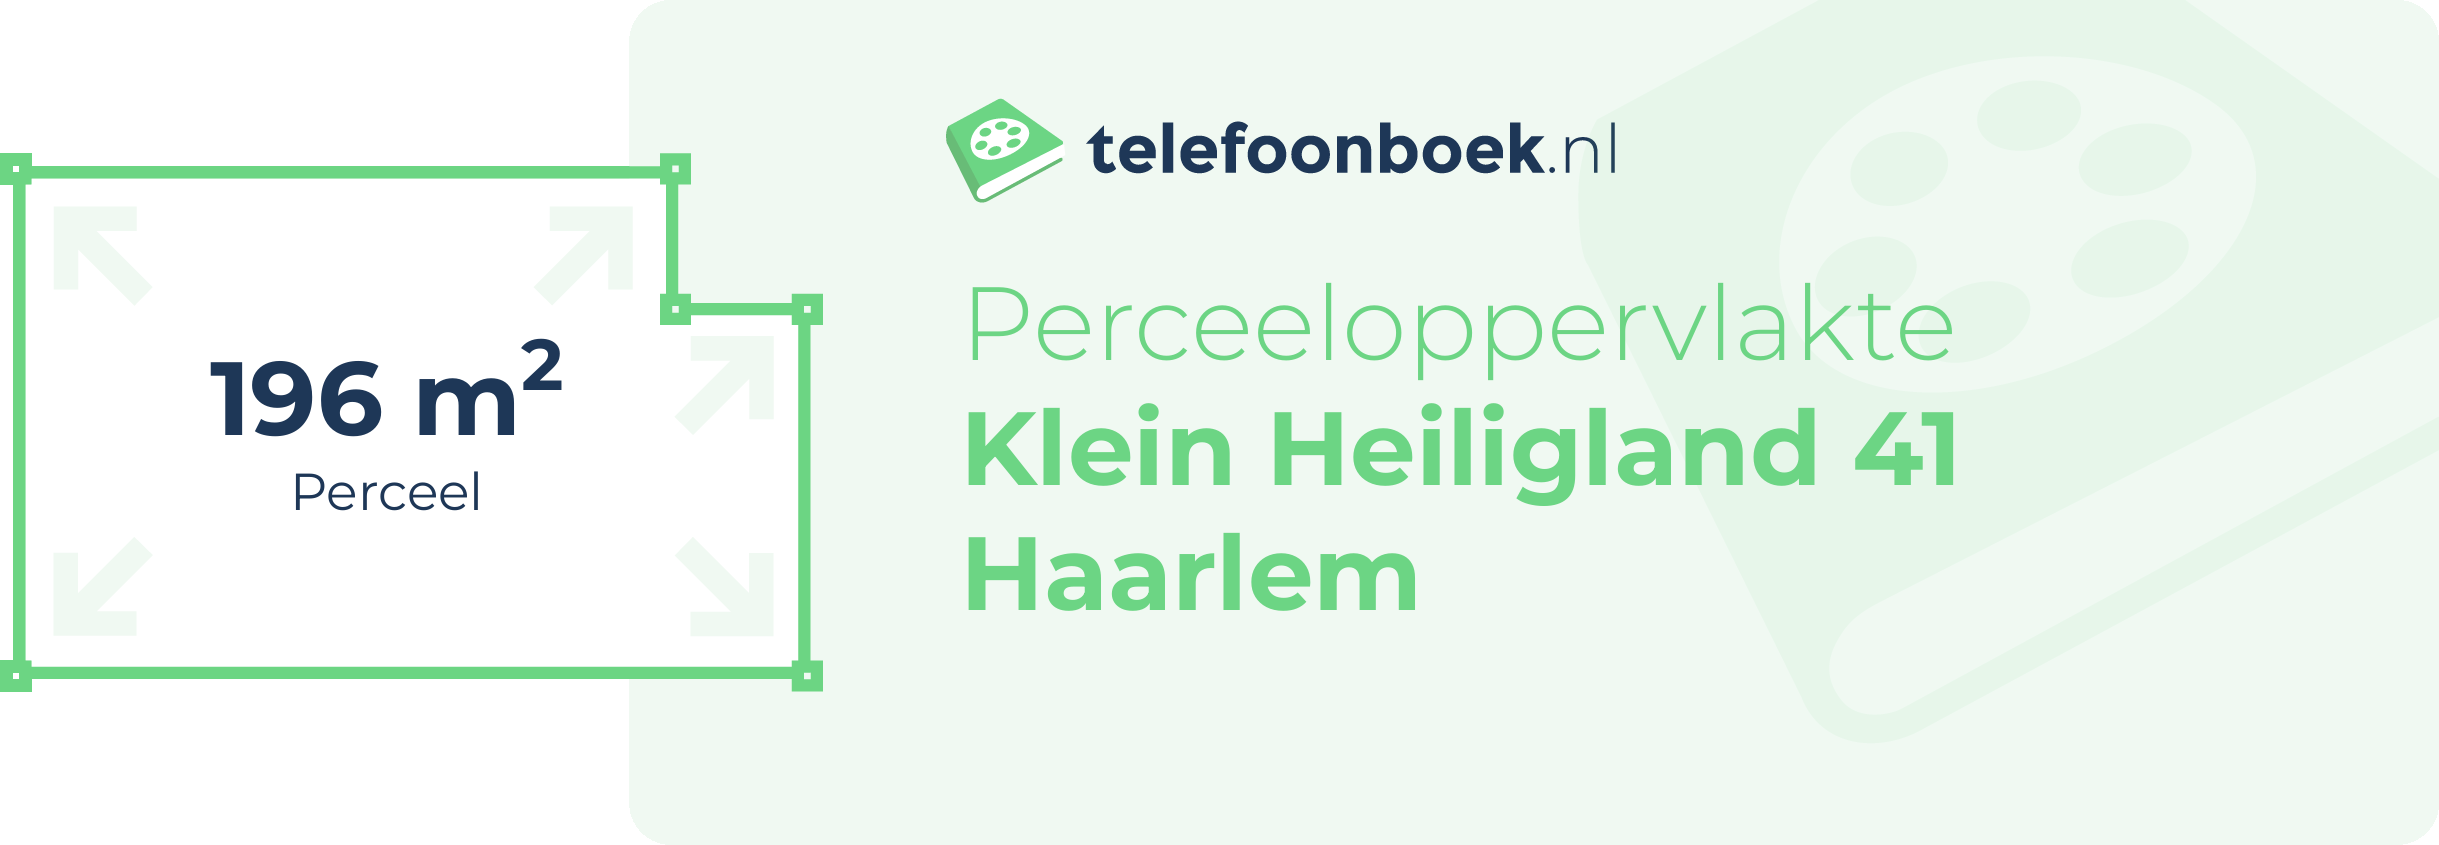 Perceeloppervlakte Klein Heiligland 41 Haarlem